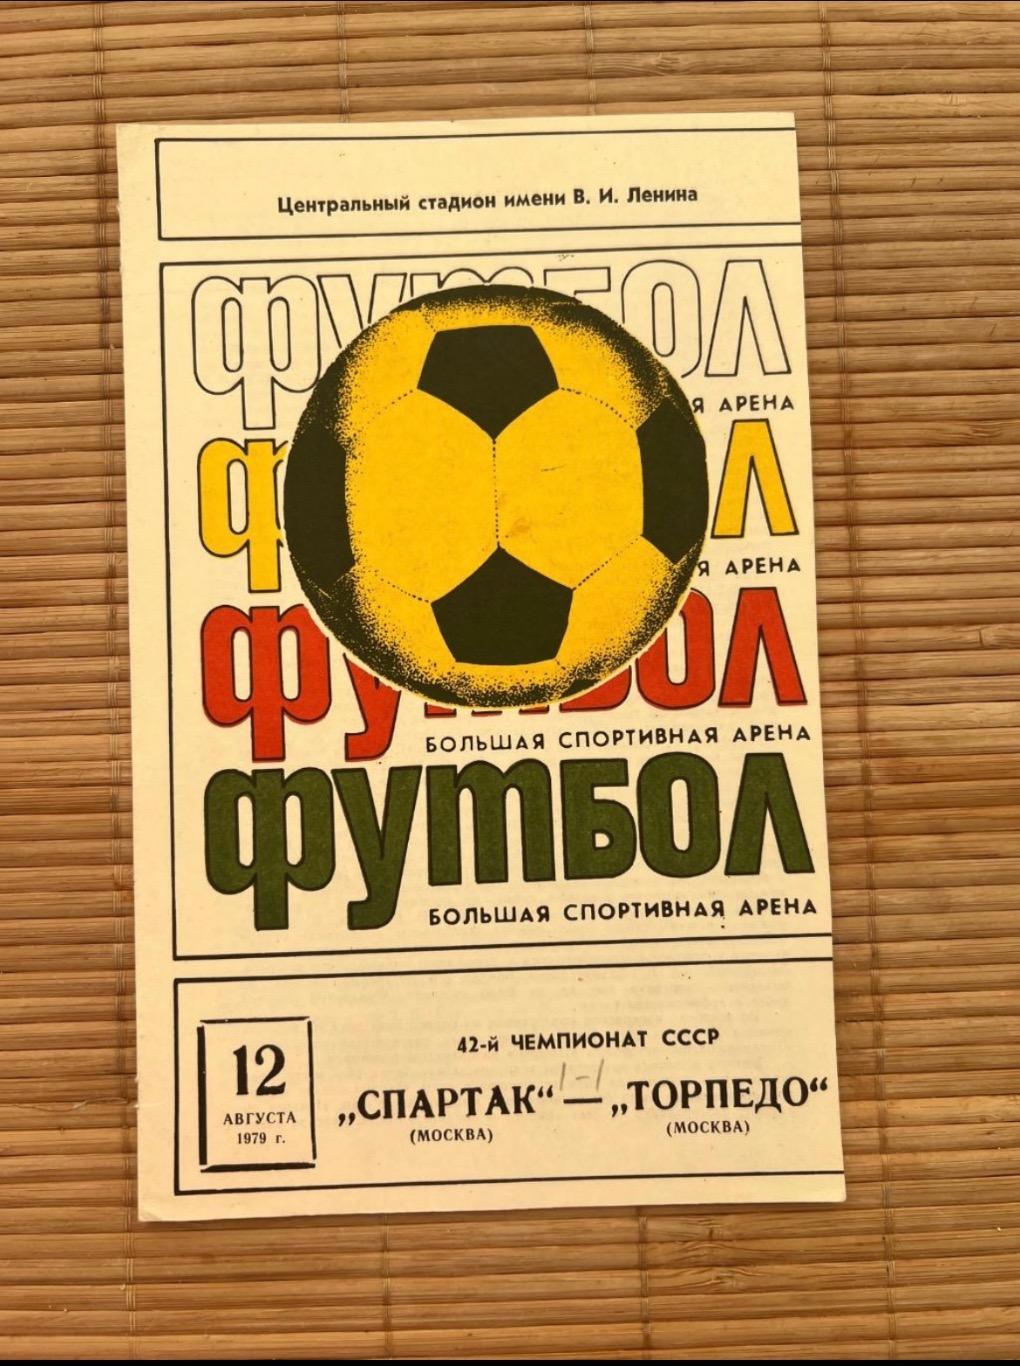 Спартак Москва - торпедо. 12.08.1979